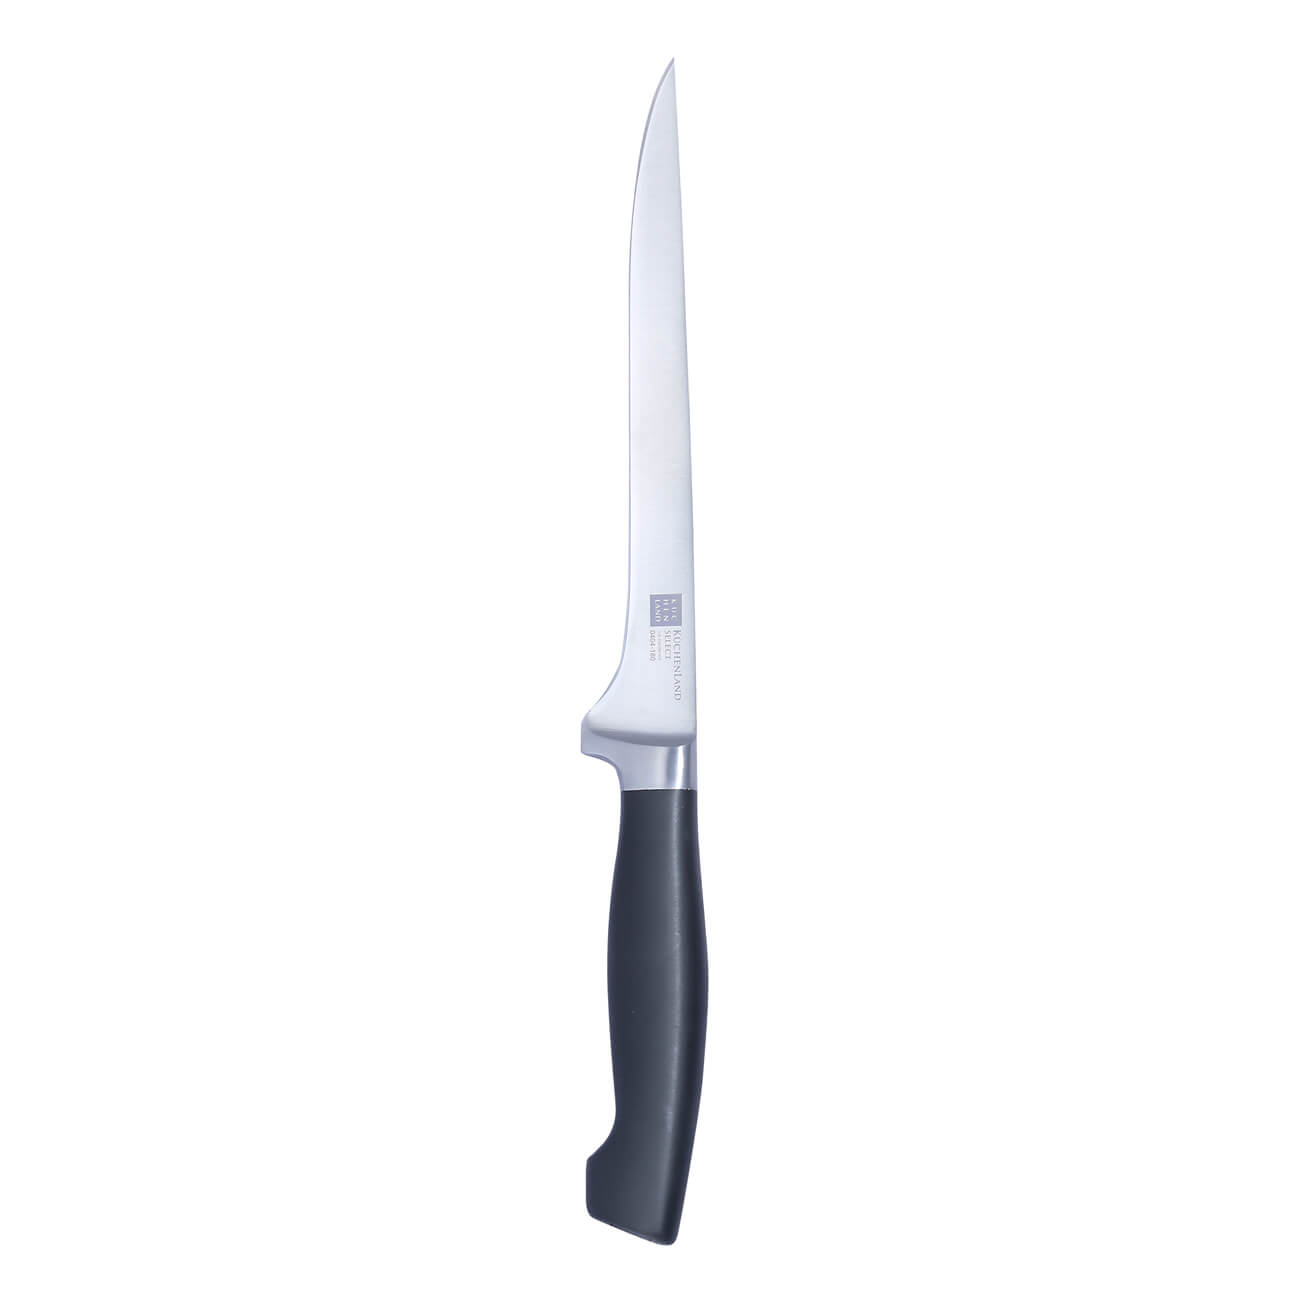 Нож филейный, 18 см, сталь/пластик, Select нож samura филейный mo v 21 8 см g 10